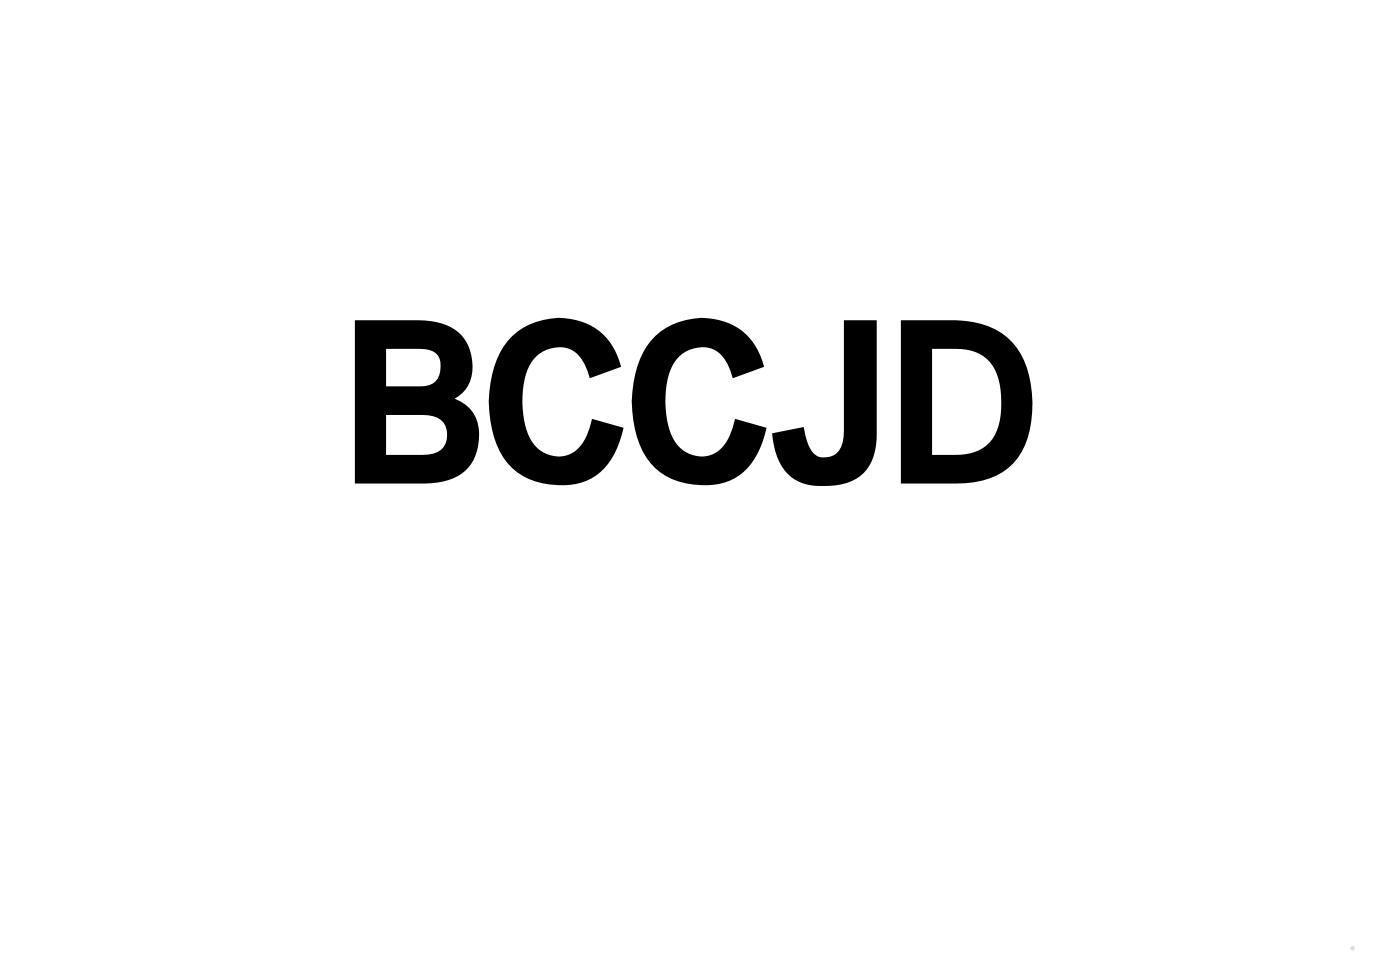 BCCJD